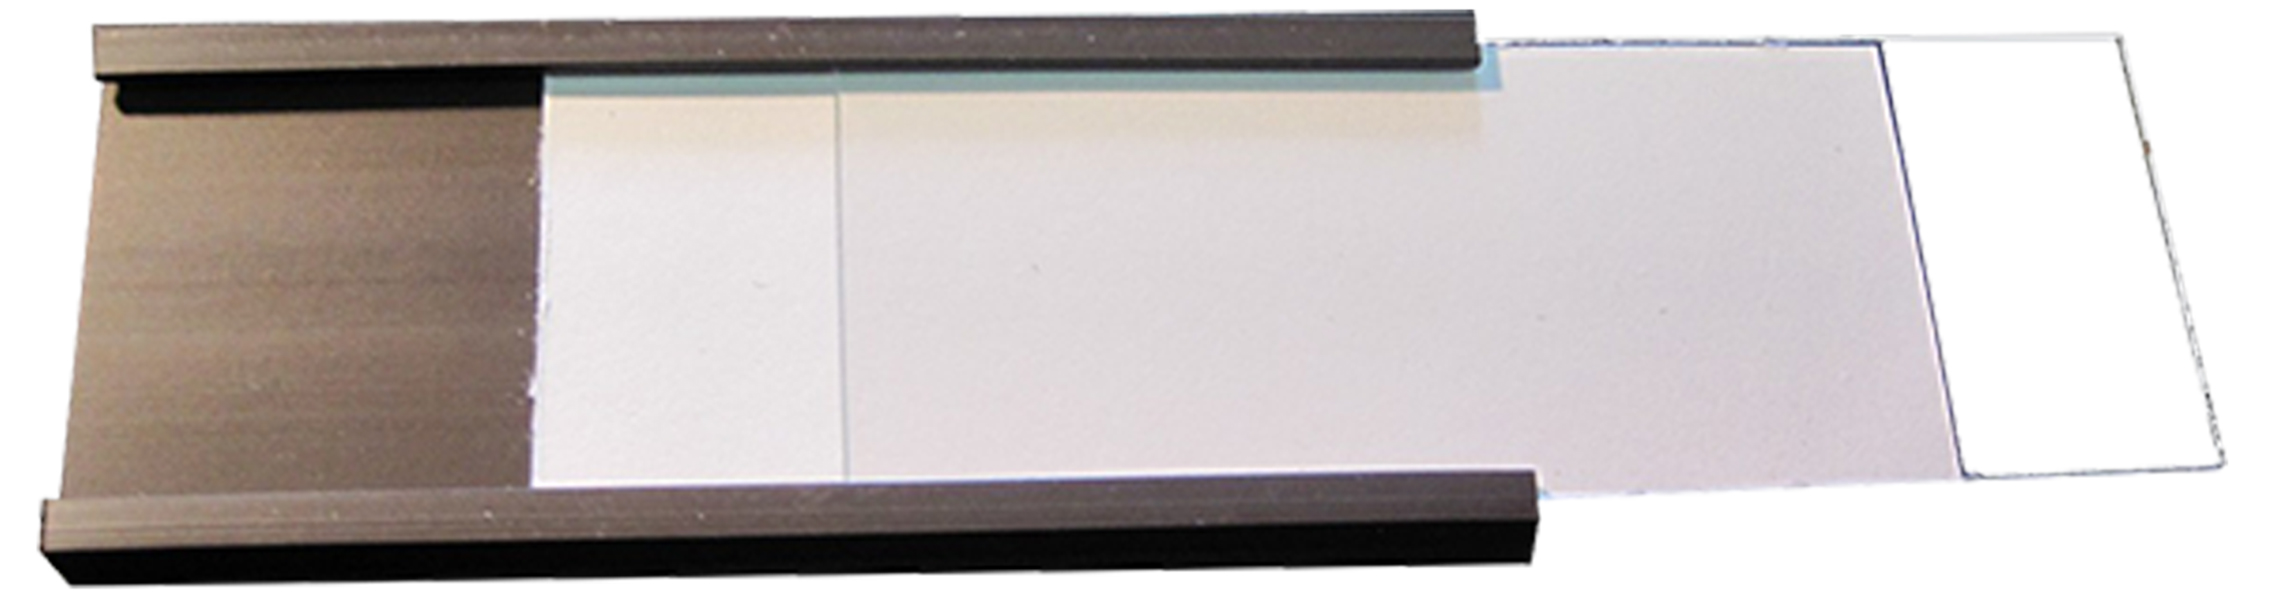 C-Profilé Magnétique, Profil C magnétique, étiquettes magnétiques pour l'écriture, étiquettes magnétiques pour étagères, porte-cartes de données, bande magnétique C-Channel avec films de protection, étiquettes d'organisation d'étagères